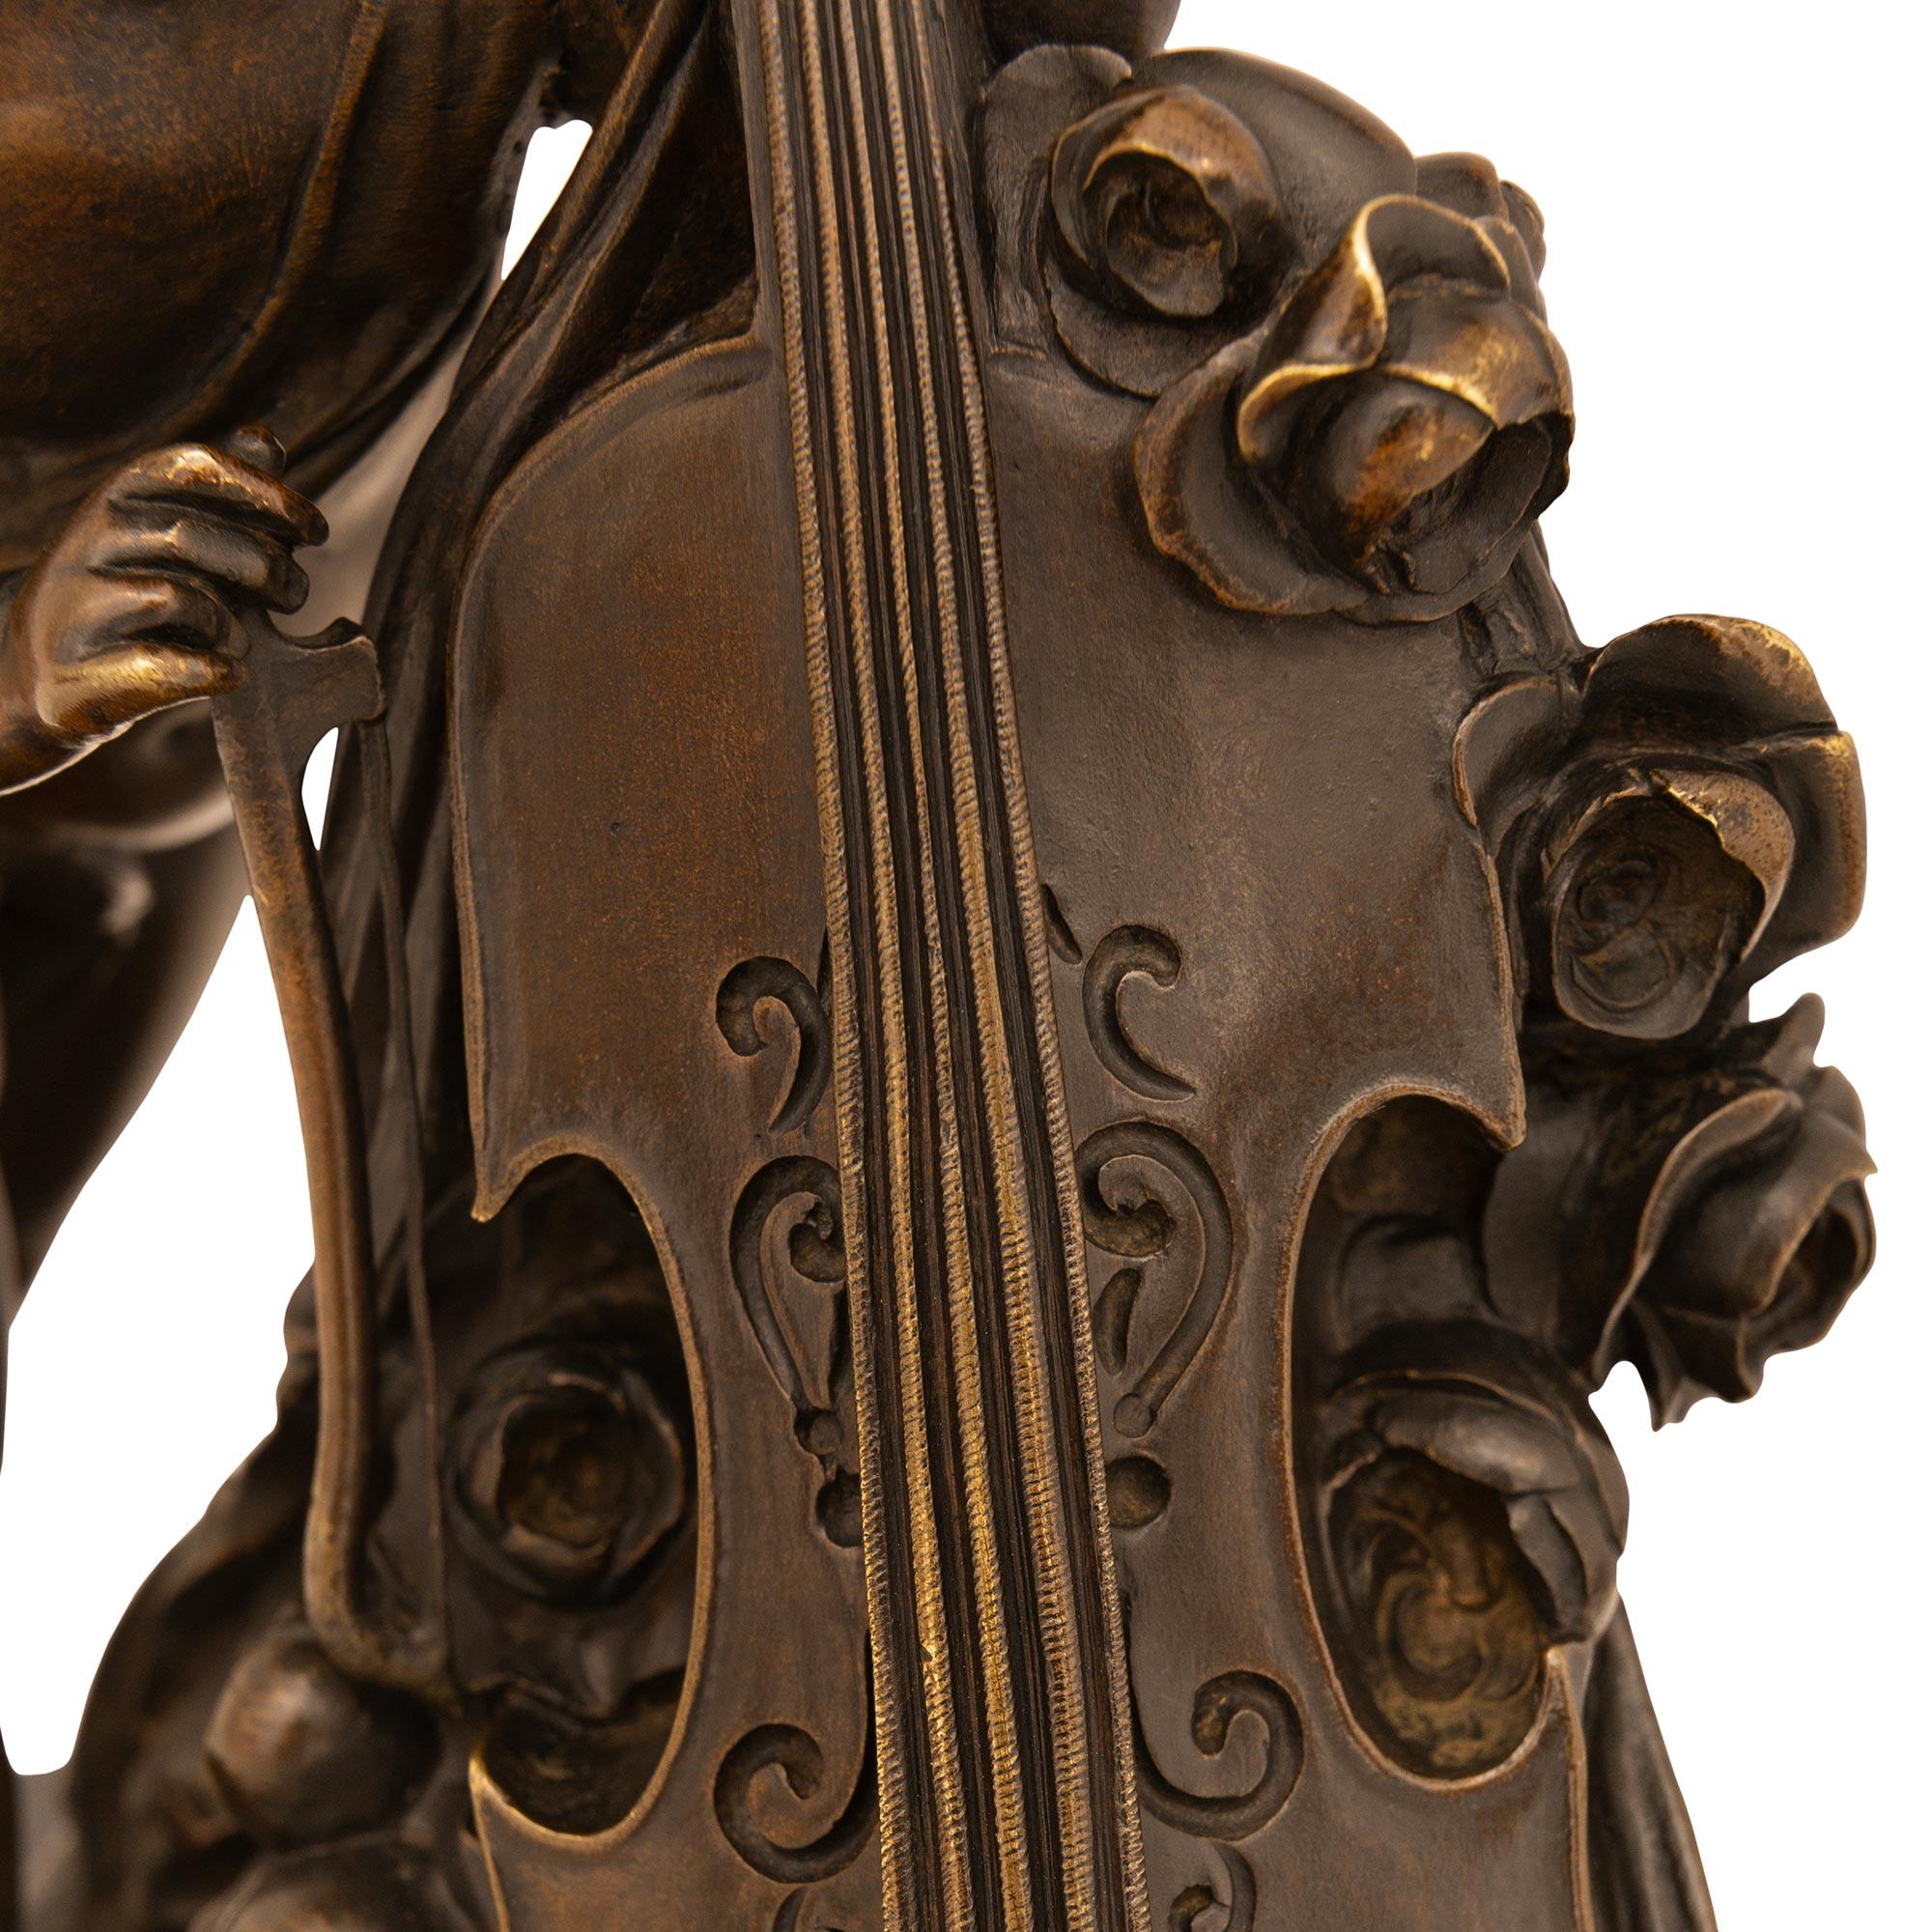 Charmante statue d'angelot en bronze patiné et marbre noir belge de style Louis XVI du XIXe siècle. Cette charmante statue est surélevée par une base rectangulaire en marbre belge noir avec un bord lisse et poli. La base en marbre est surmontée d'un